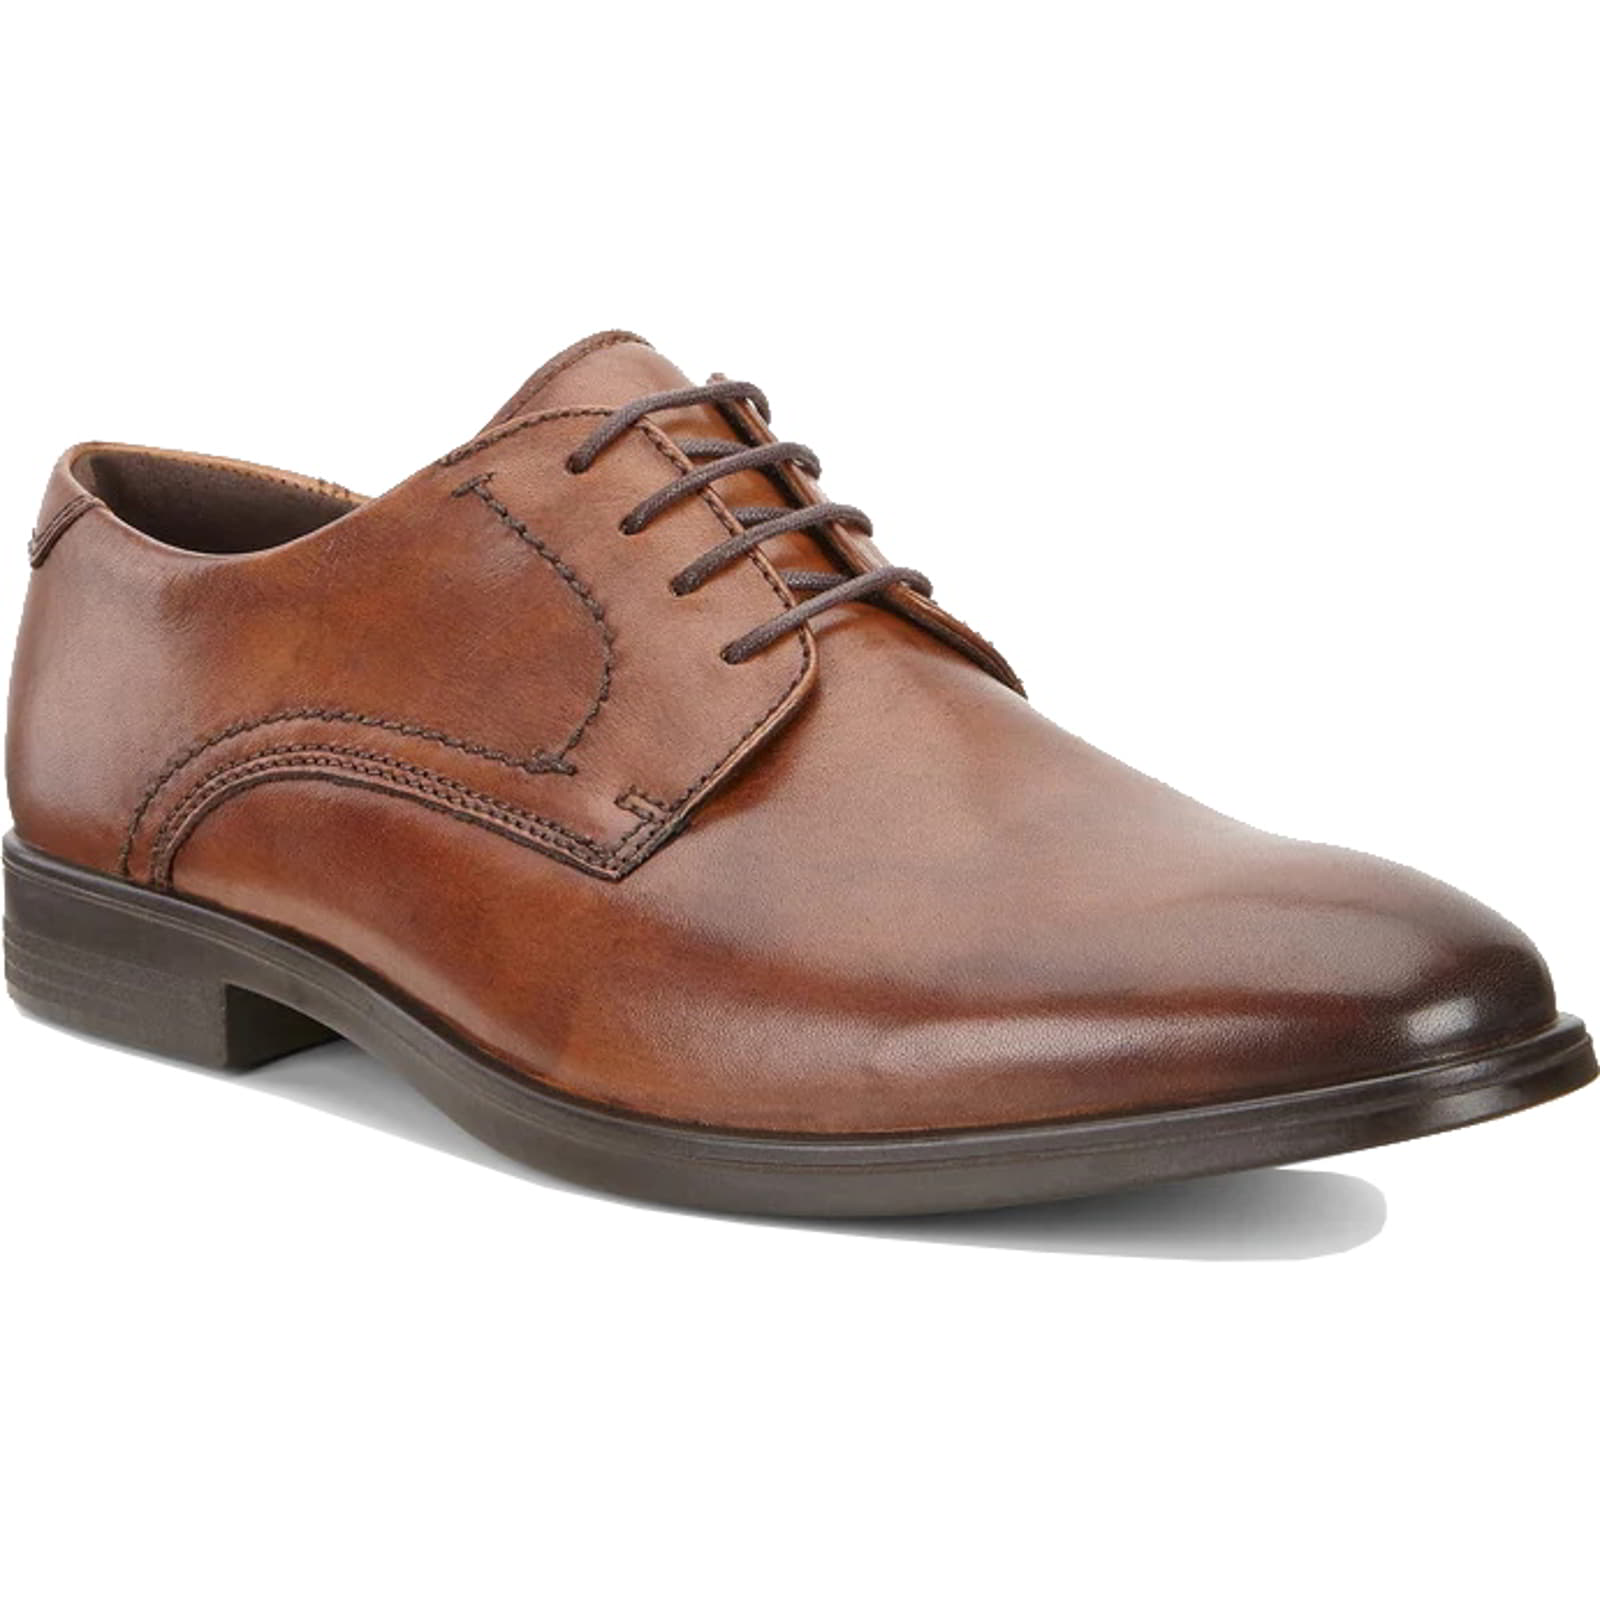 Ecco Melbourne Men's Shoes | Leather Derby Shoes Oxford Shoes - UK 10.5-11 / EU 45